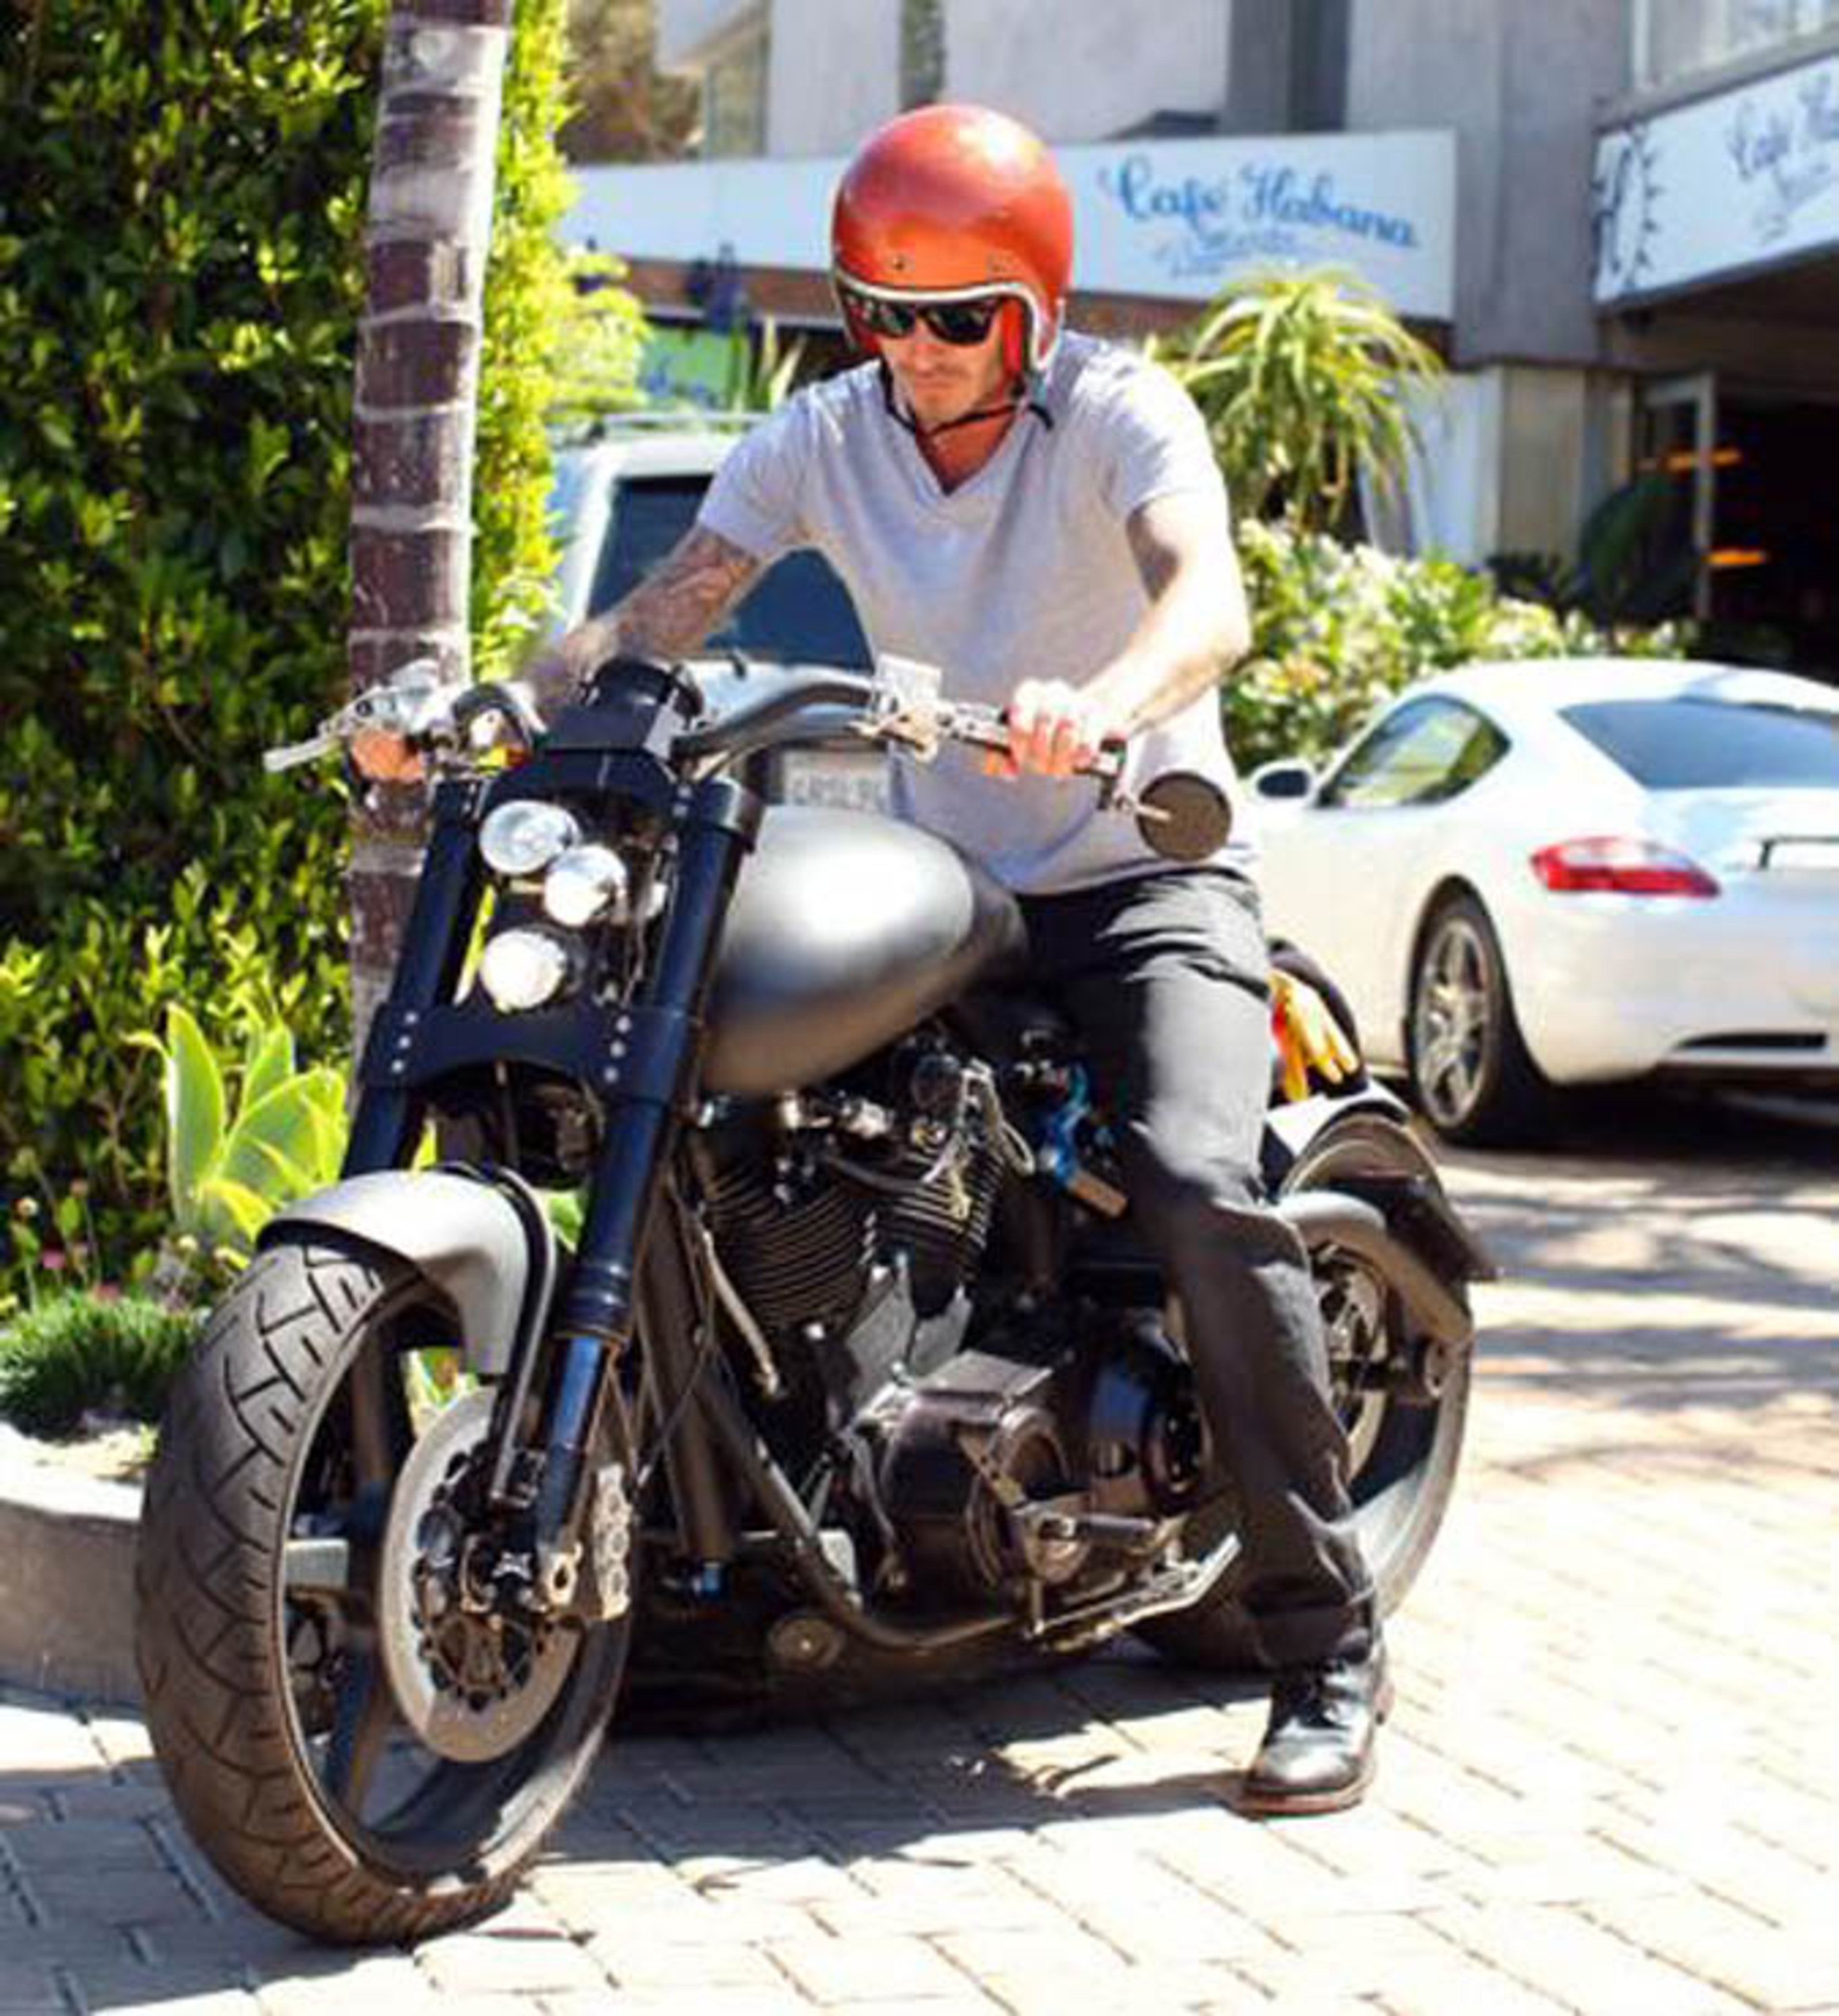 Beckham in vacanza sulla sua nuova moto